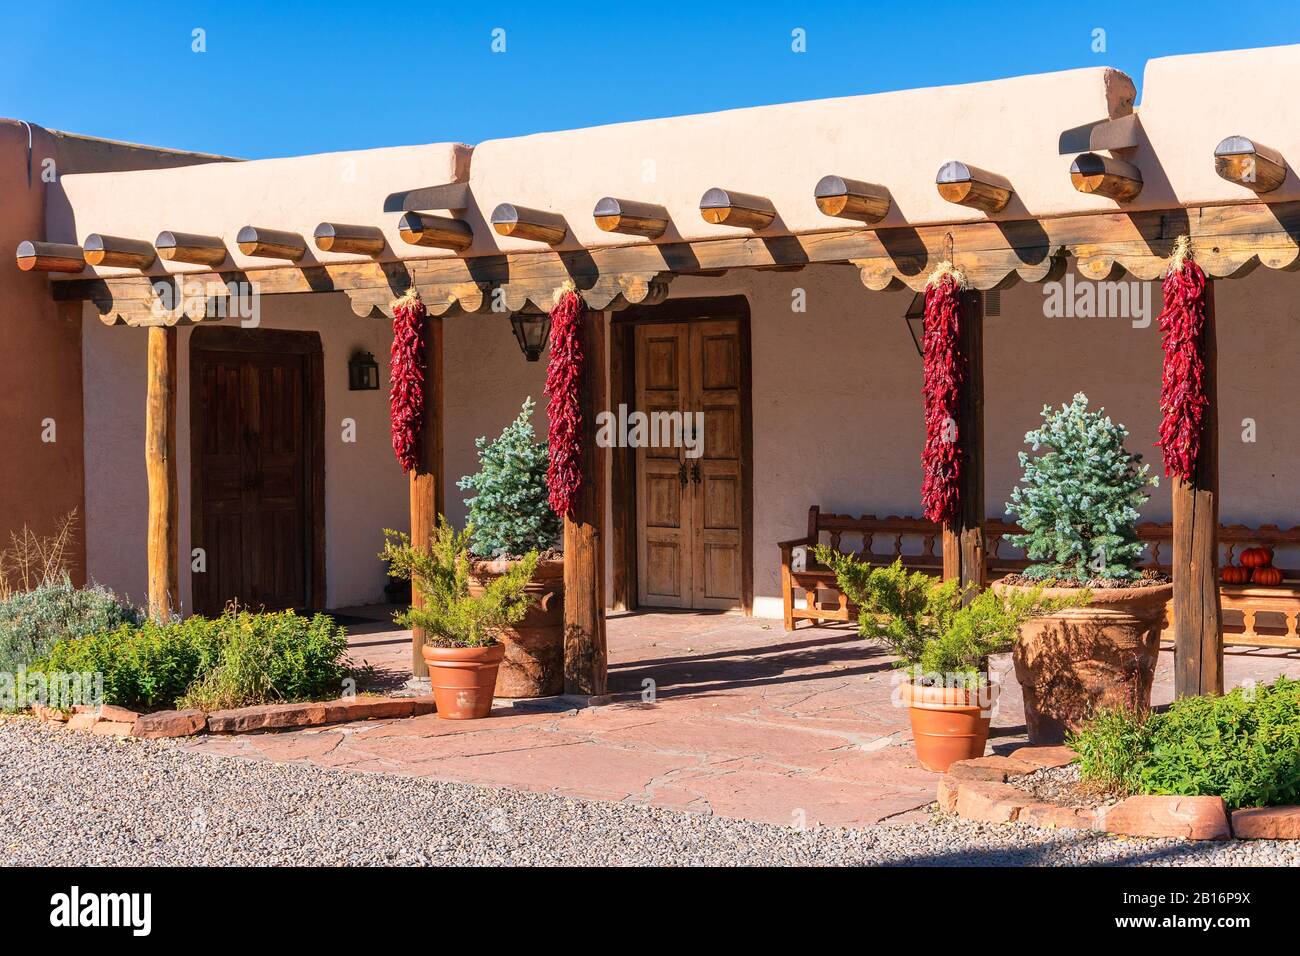 Casa de estilo pueblo con arquitectura de adobe con ristras (chiles rojos secos) en Santa Fe, Nuevo México, Estados Unidos Foto de stock